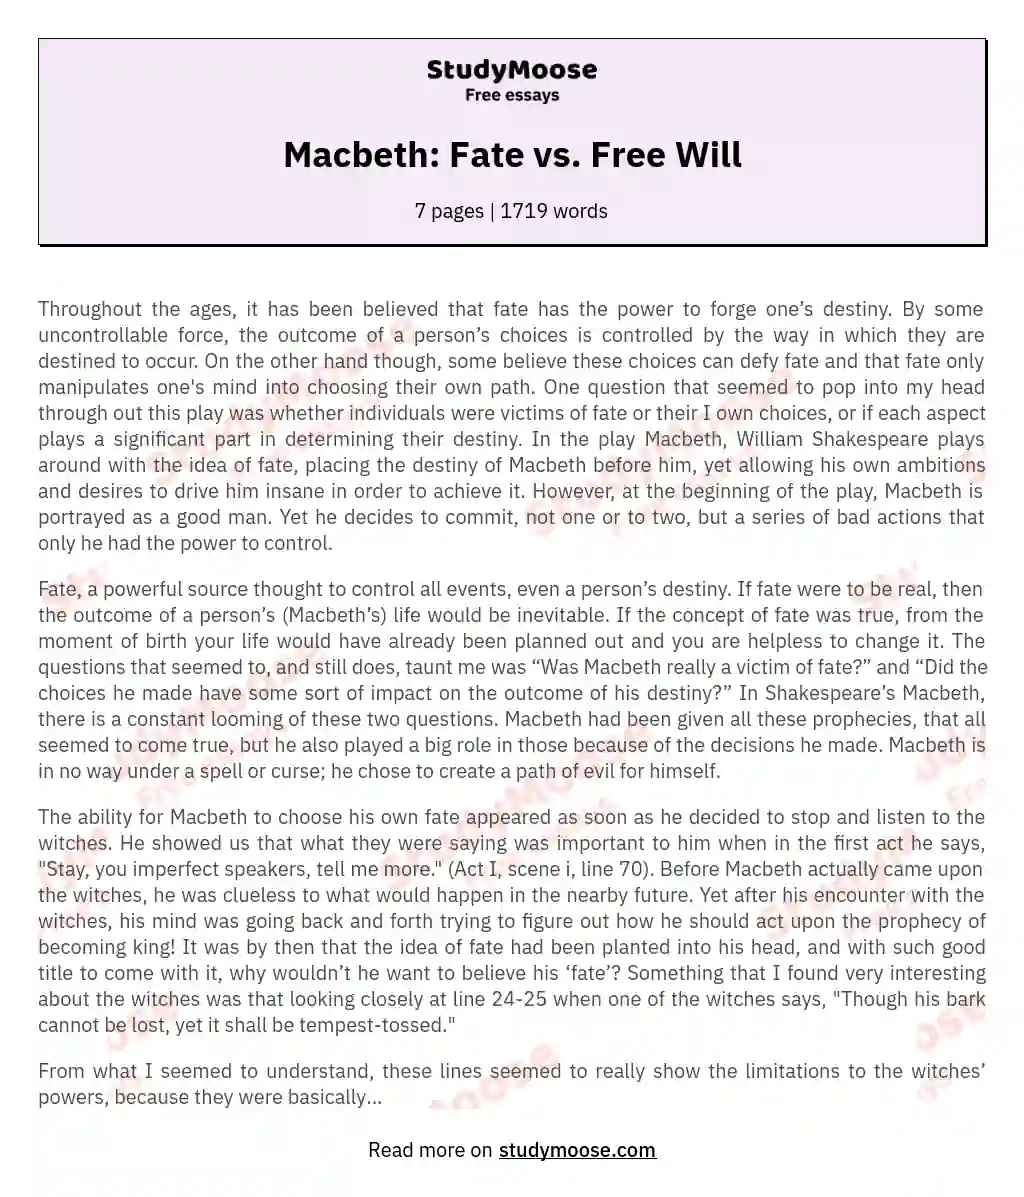 macbeth free will vs fate essay